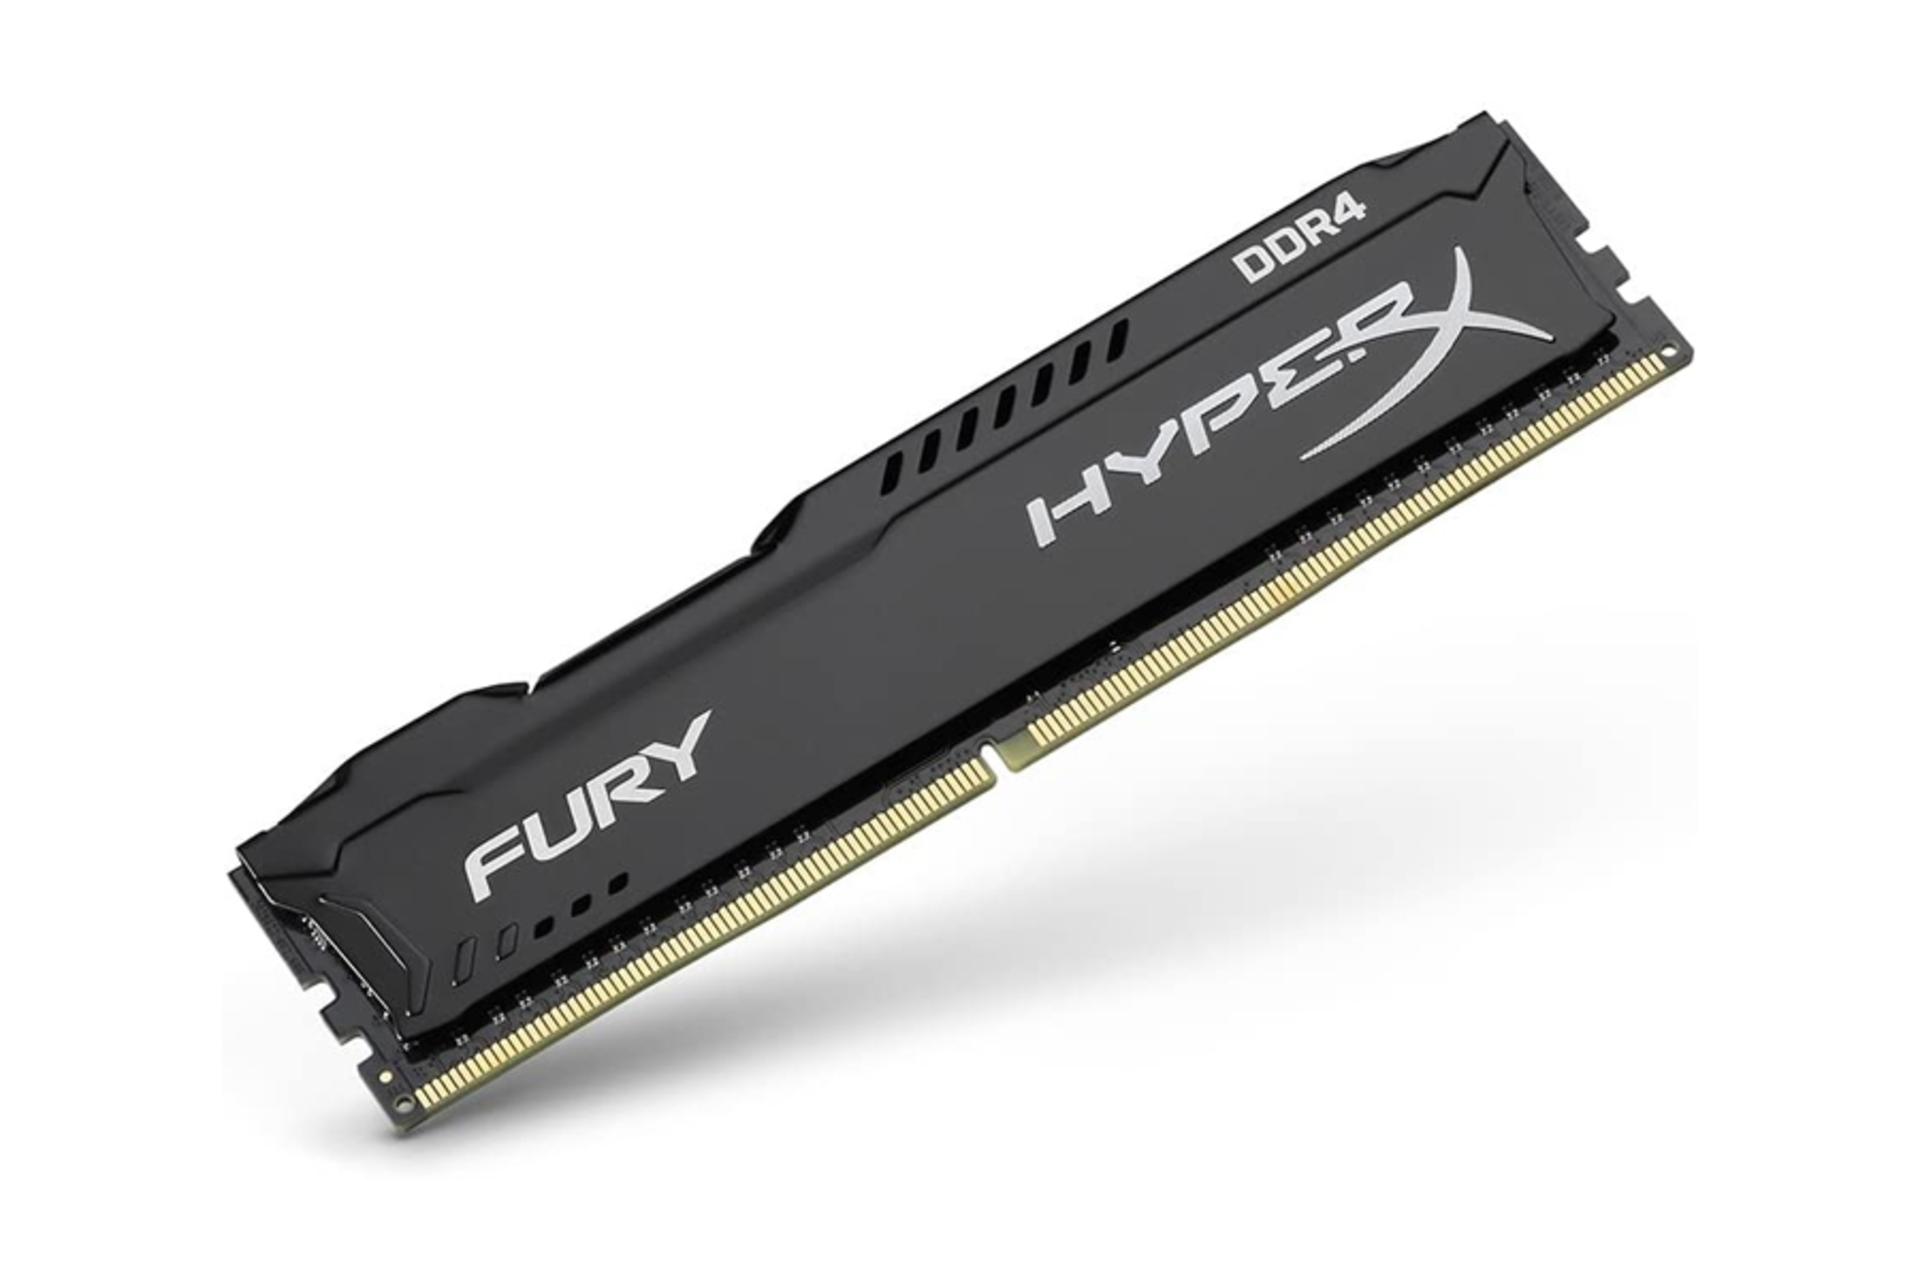 نمای کنار رم کینگستون HyperX Fury ظرفیت 16 گیگابایت (4x4) از نوع DDR4-2666